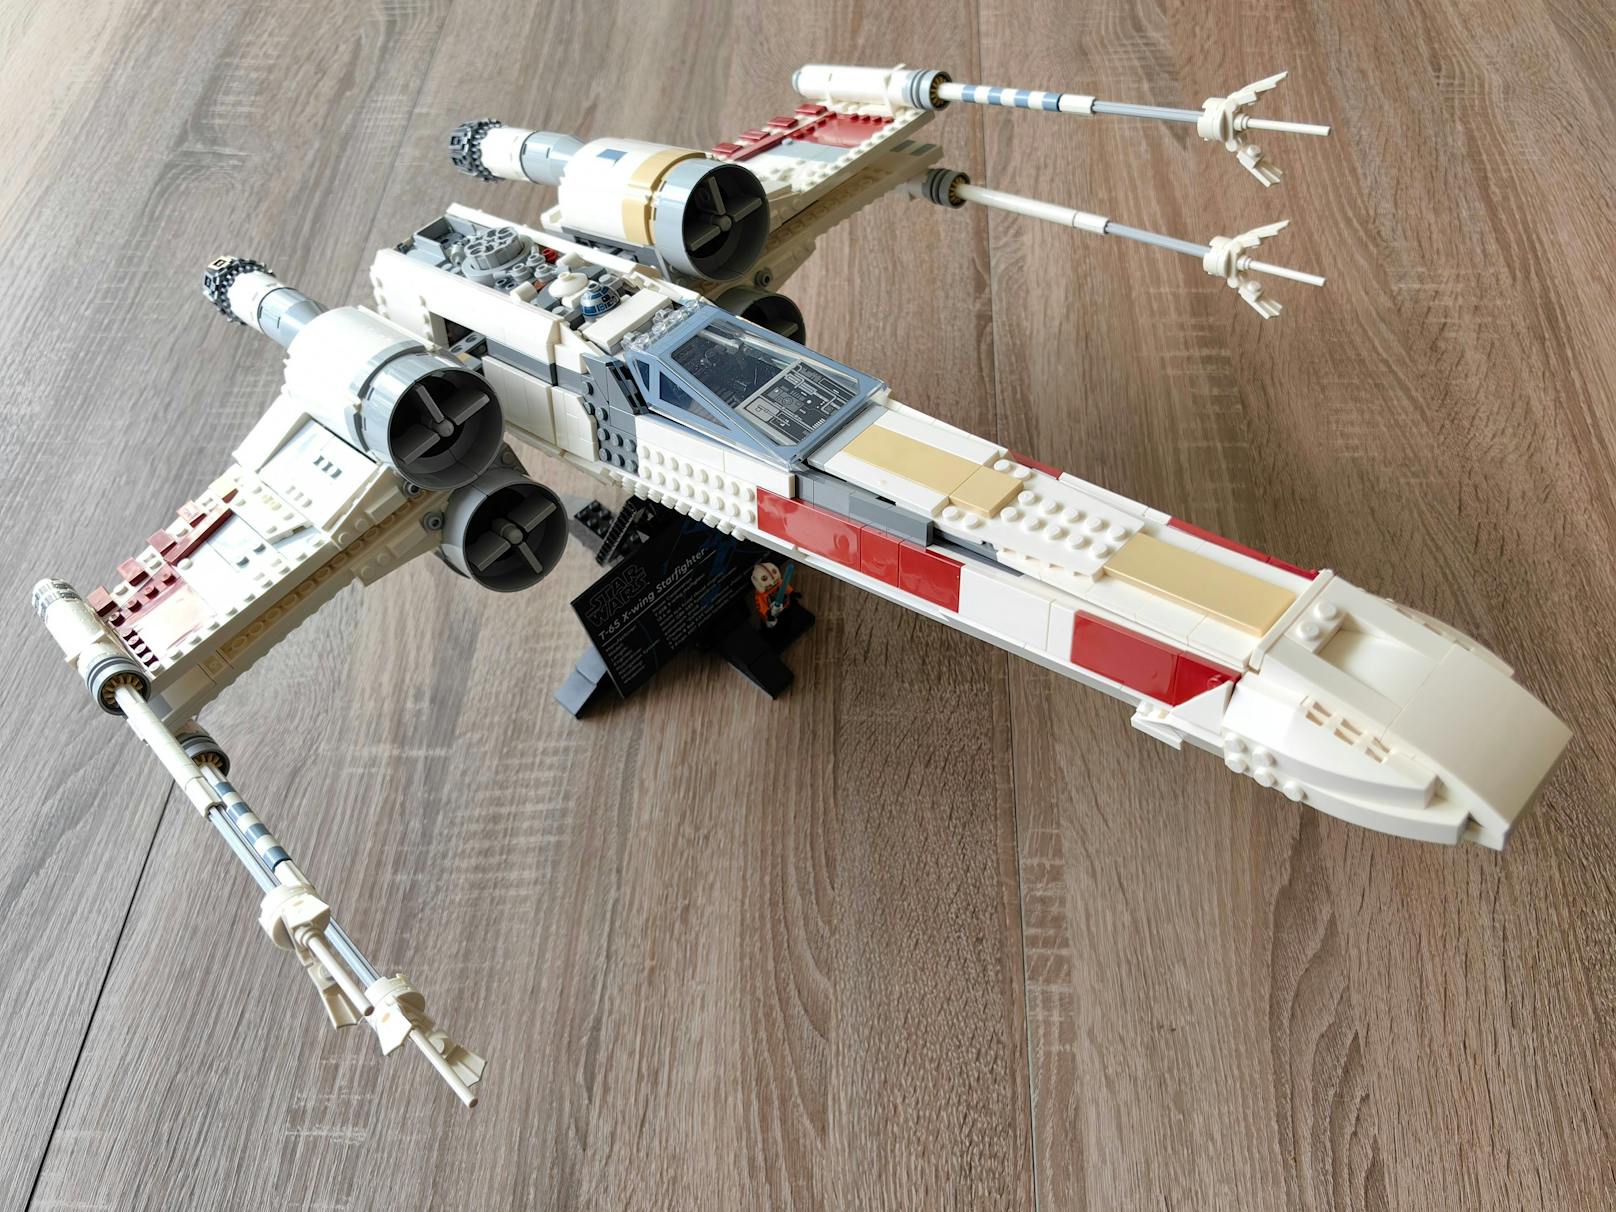 ... weniger Klebearbeit, bessere Proportionen – LEGO hat in der dritten Version den X-Wing Starfighter deutlich verbessert. Fraglich ist für Besitzer der 2013er-Version, ob ...